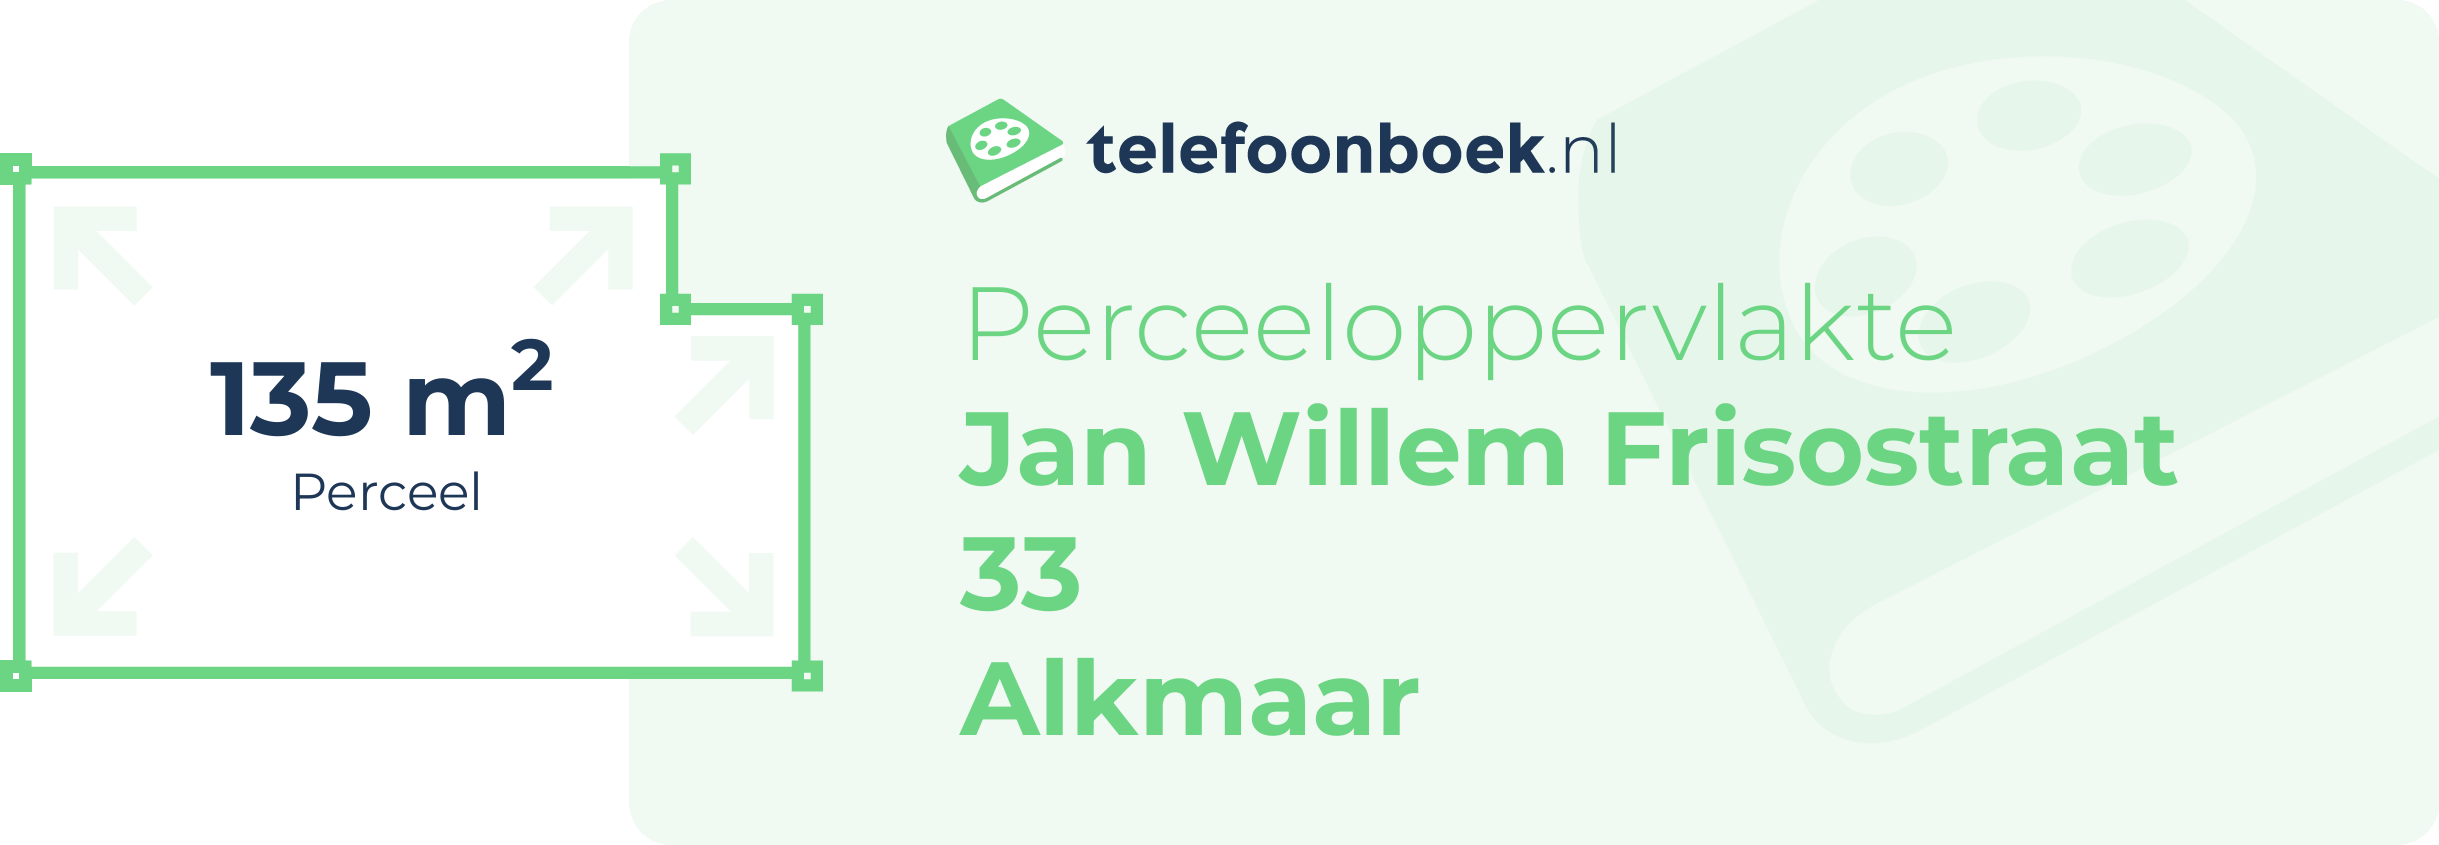 Perceeloppervlakte Jan Willem Frisostraat 33 Alkmaar